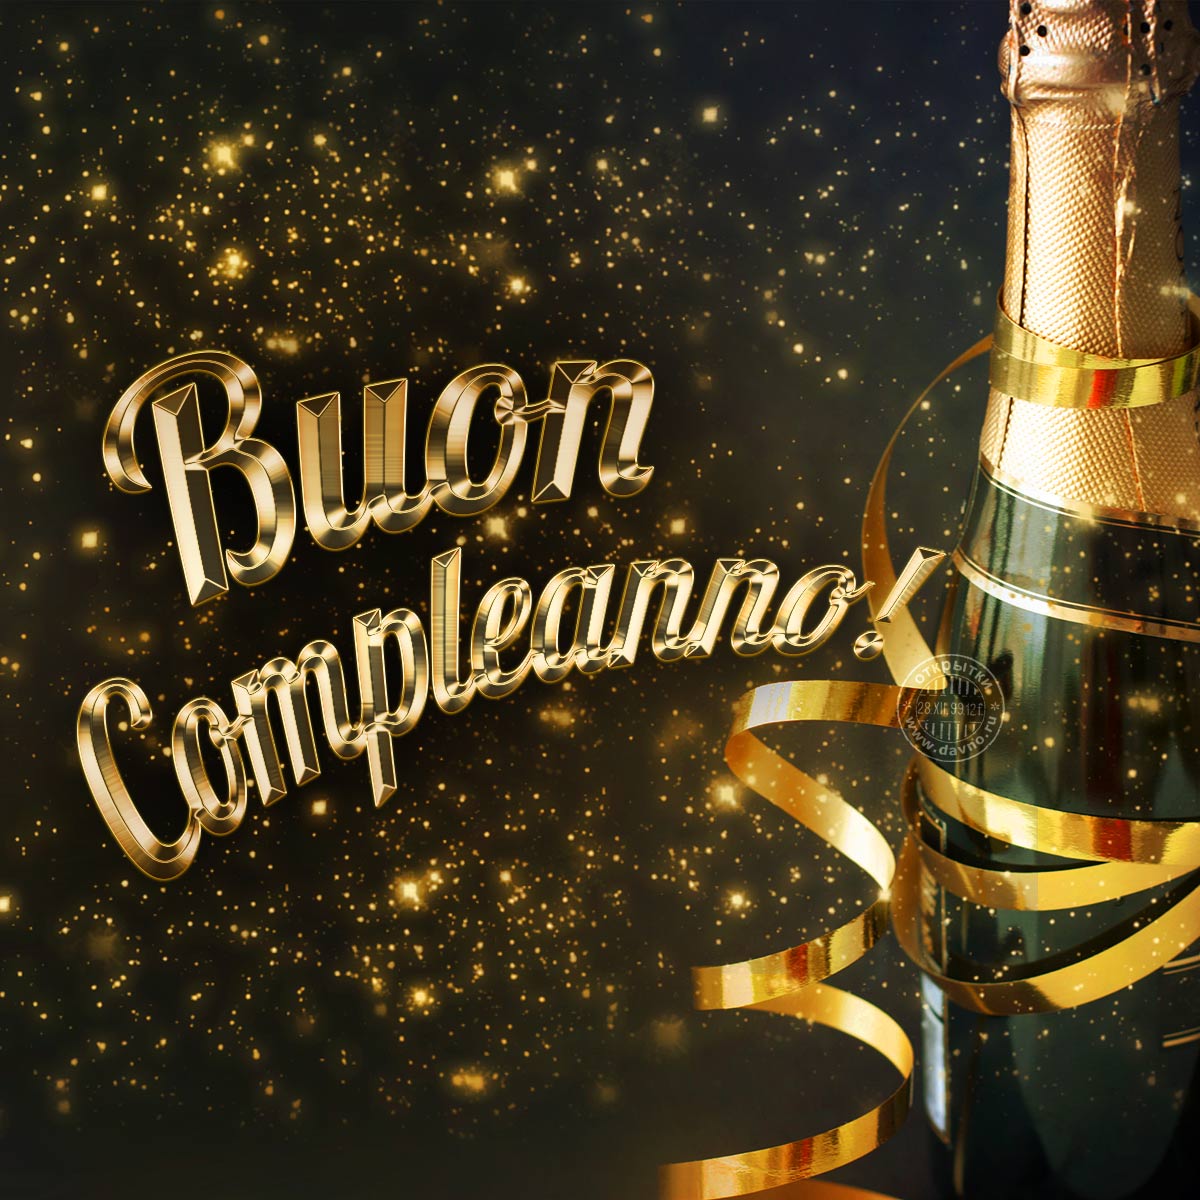 Buon Compleanno! - поздравление на итальянском